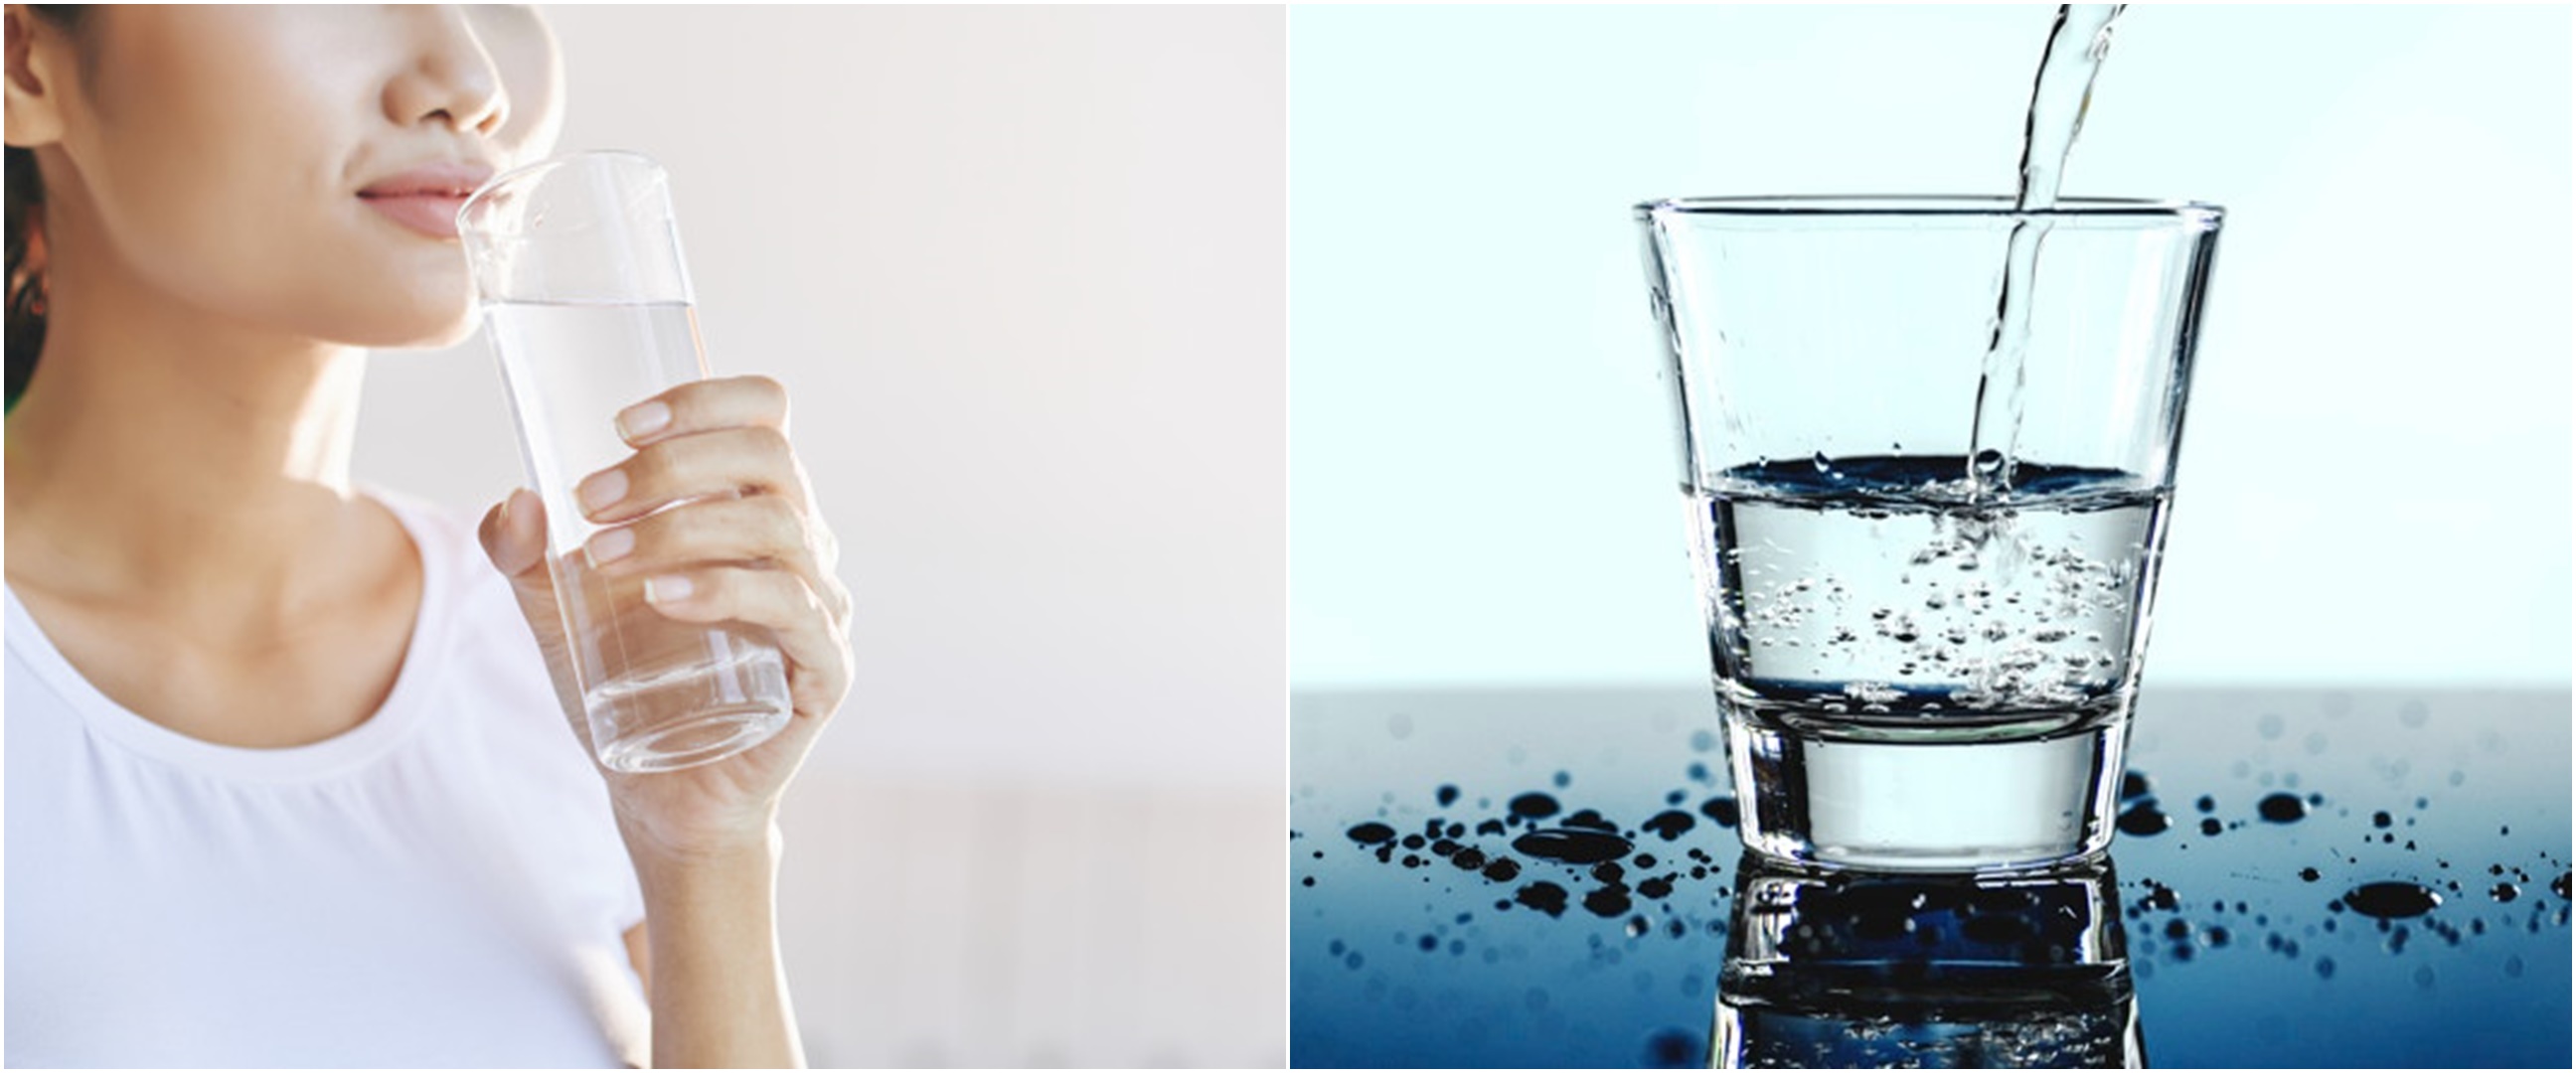 10 Manfaat minum air hangat untuk kesehatan, turunkan berat badan